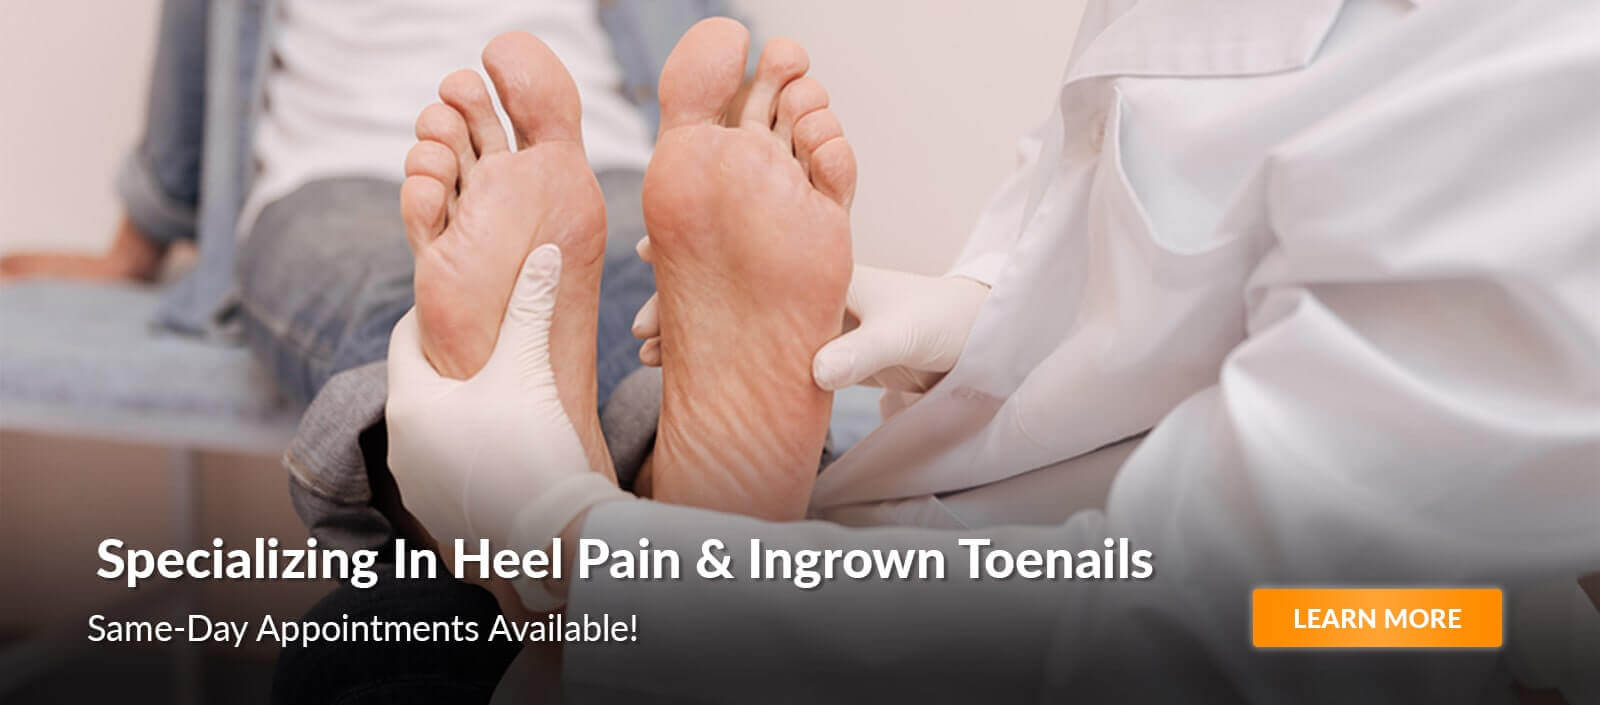 specializing in heel pain & ingrown toenails